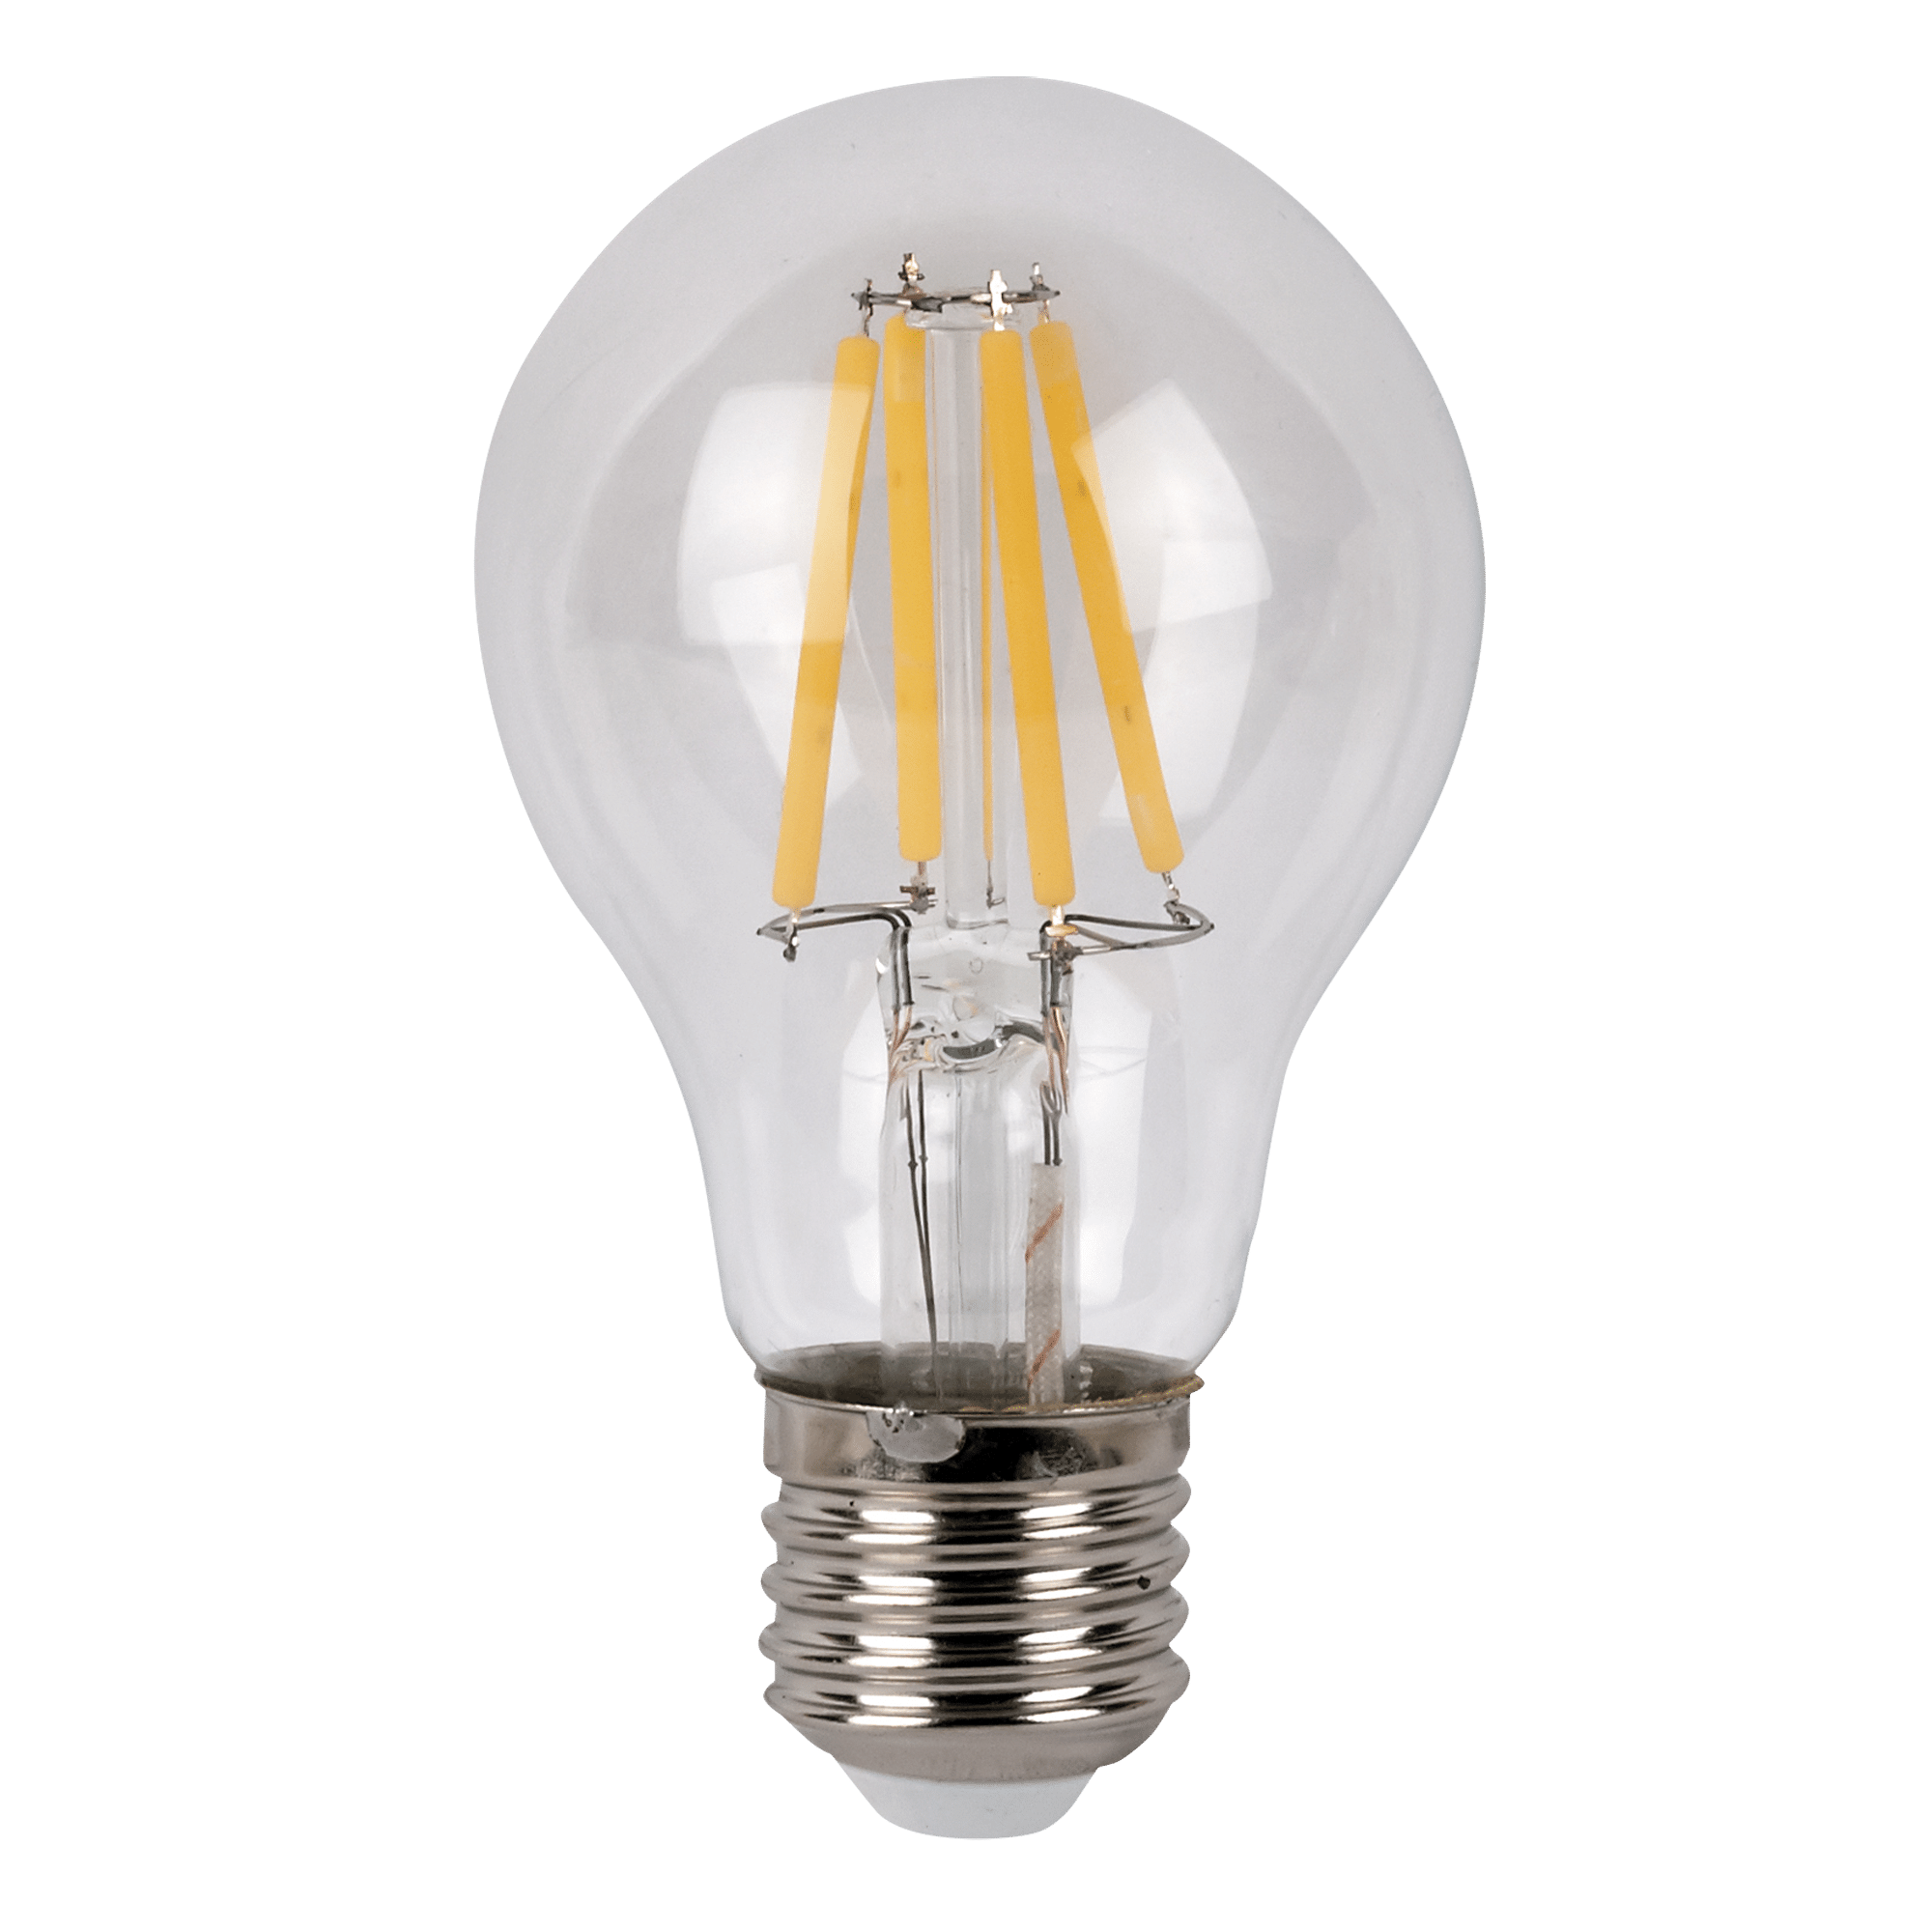 LED Bulb Clear WW E27 - Onlinediscowinkel.nl